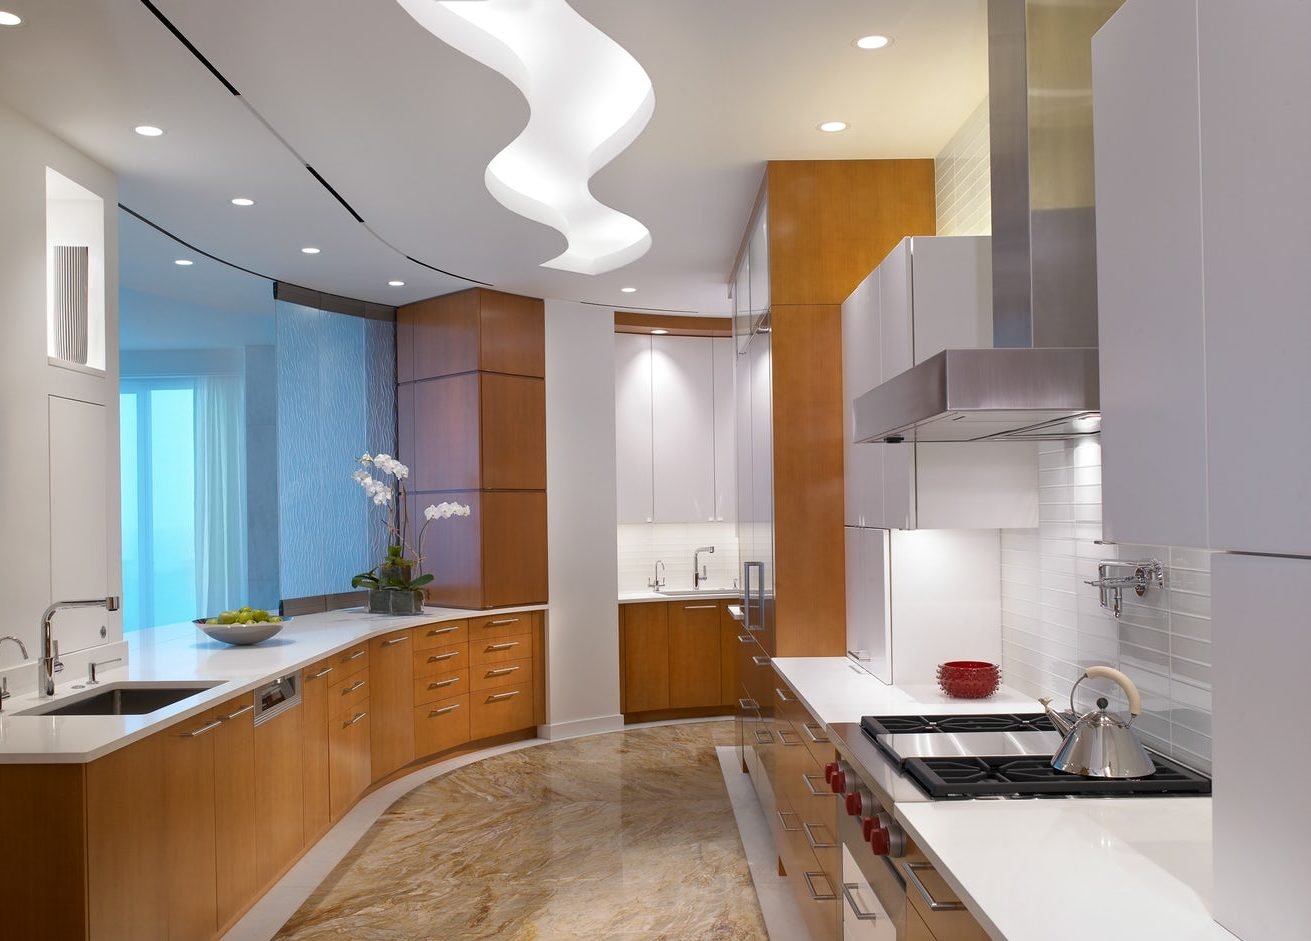 Натяжные потолки для кухни дизайн с подсветкой фото